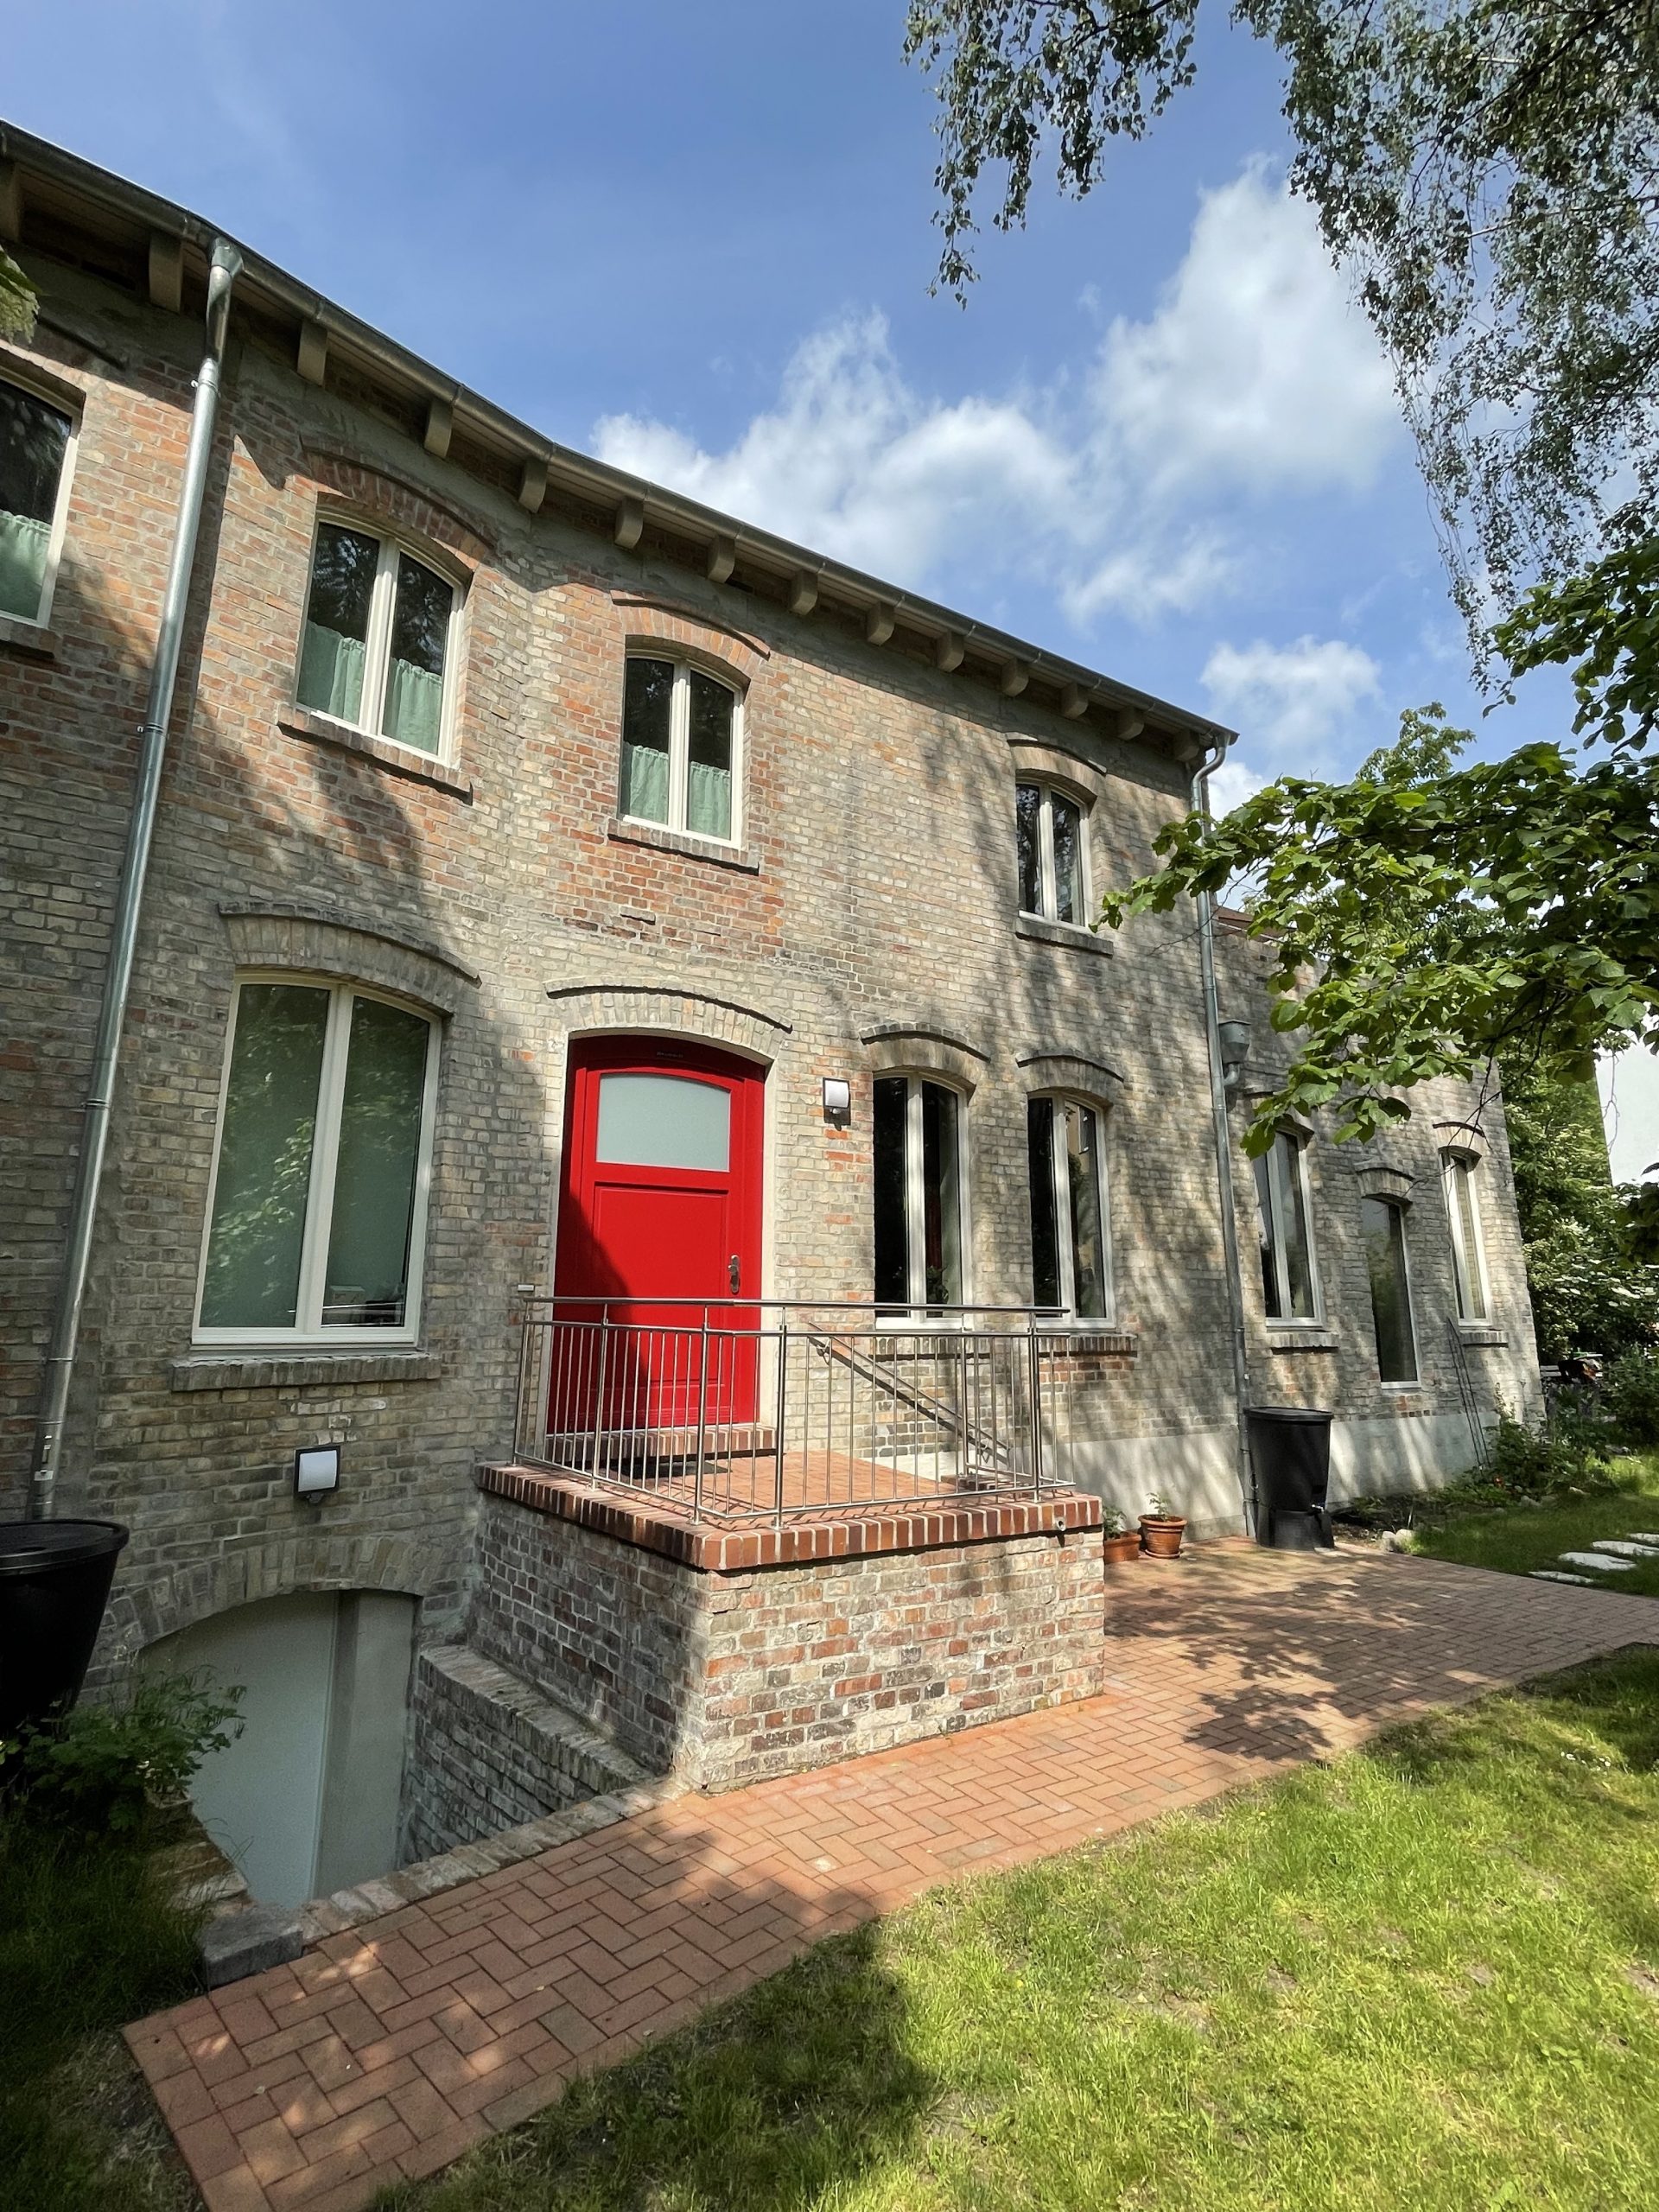 Fotografie der steinernen Eingangstreppe und der roten Eingangstür des Hinterhauses im Glauchaviertel vom Garten aus mit grünen Zweigen im Vordergrund